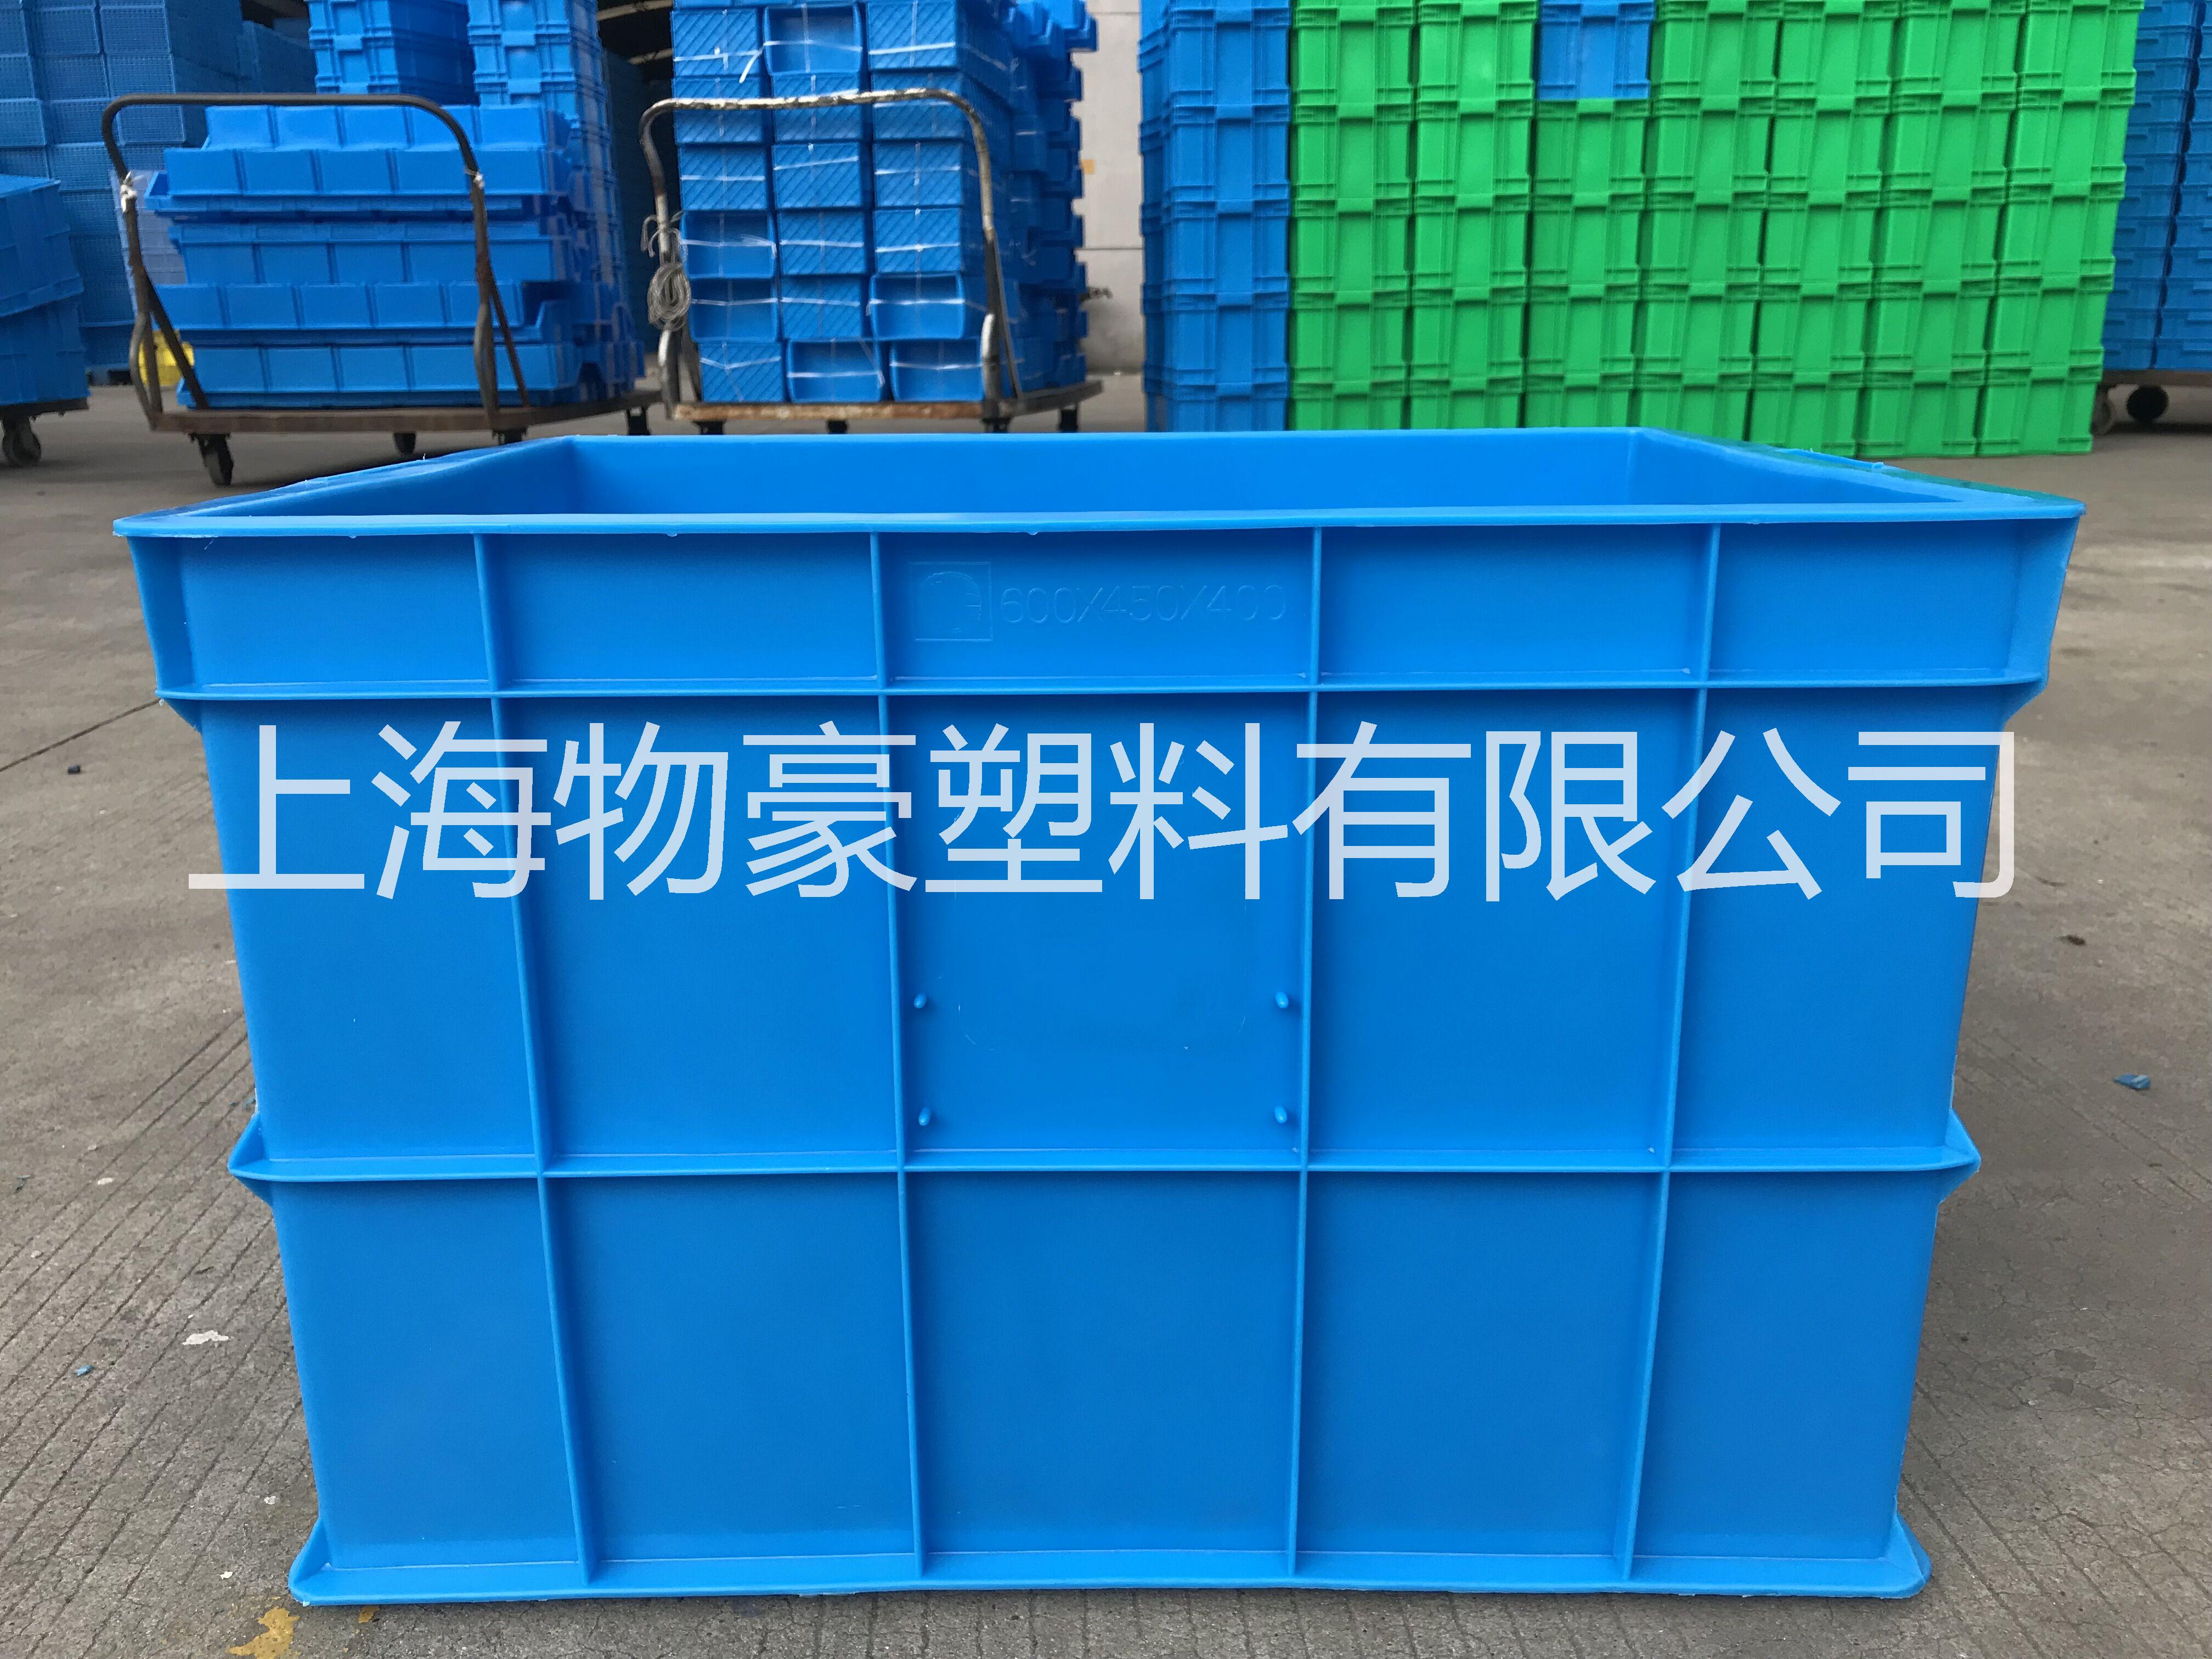 塑料周转箱|上海塑料箱厂报价表|上海塑料箱批发价格|上海塑料箱厂家直销 食品级塑料周转箱 全新料塑料周转箱图片